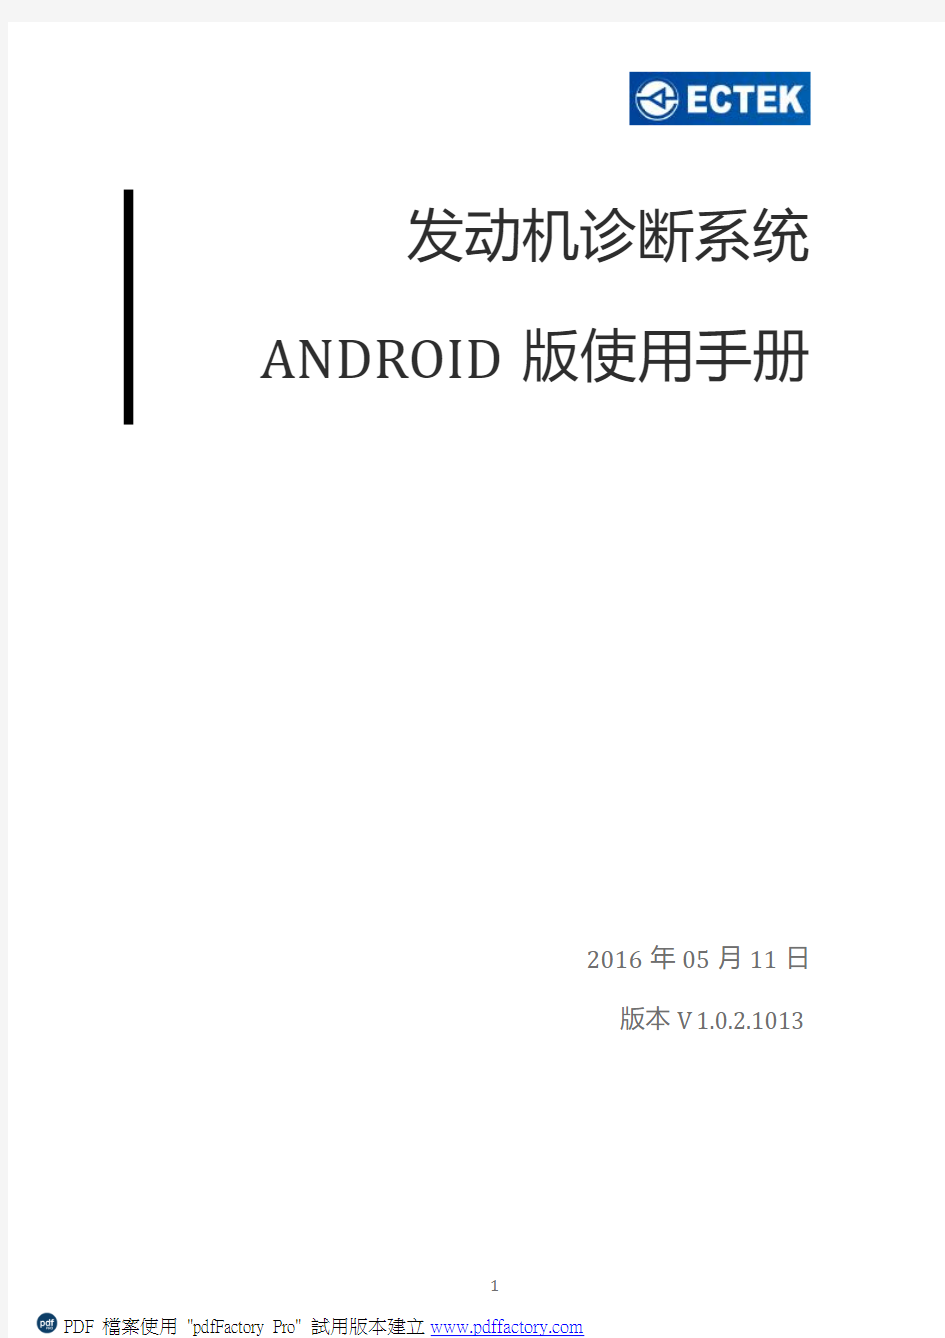 发动机诊断系统Android版使用说明1.0.2.1013